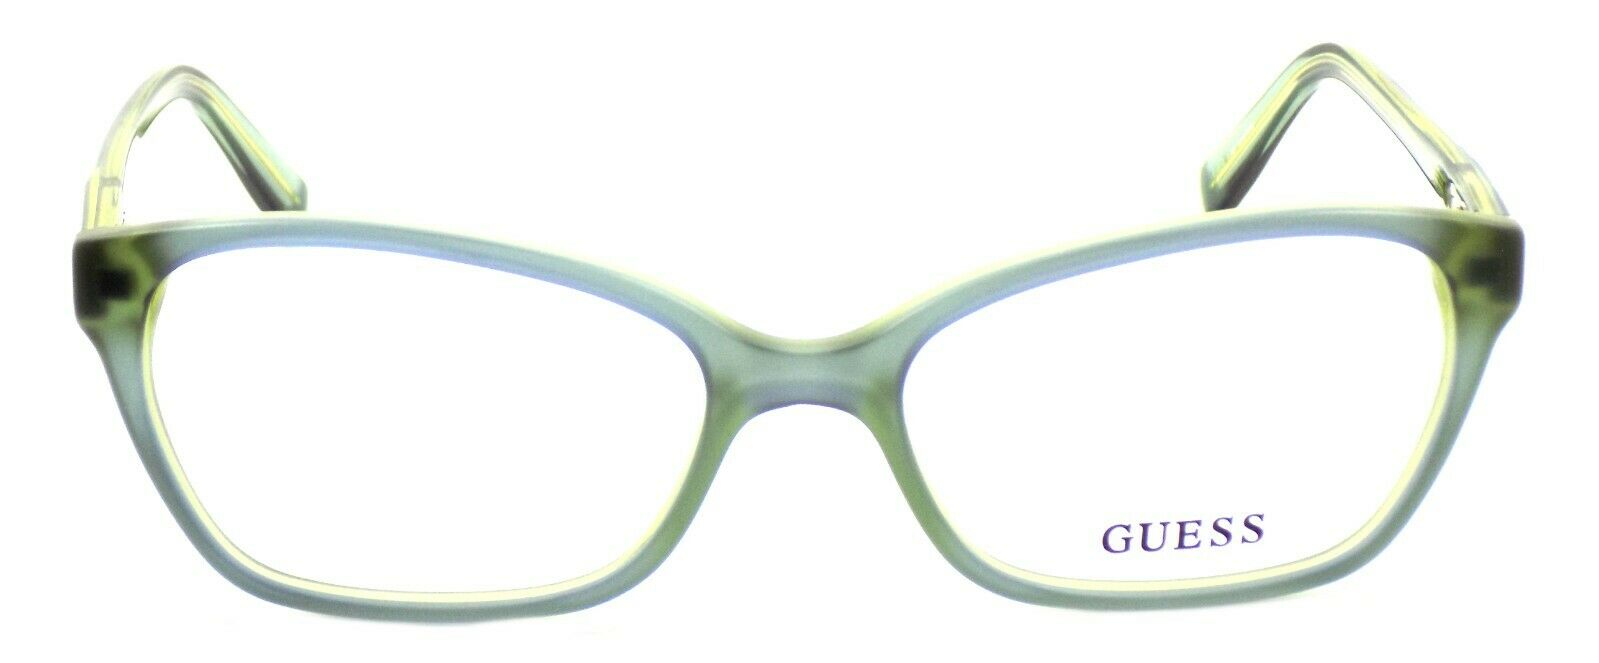 2-GUESS GU2466 BLGRN Women's Eyeglasses Frames 52-17-135 Blue / Green-715583285583-IKSpecs